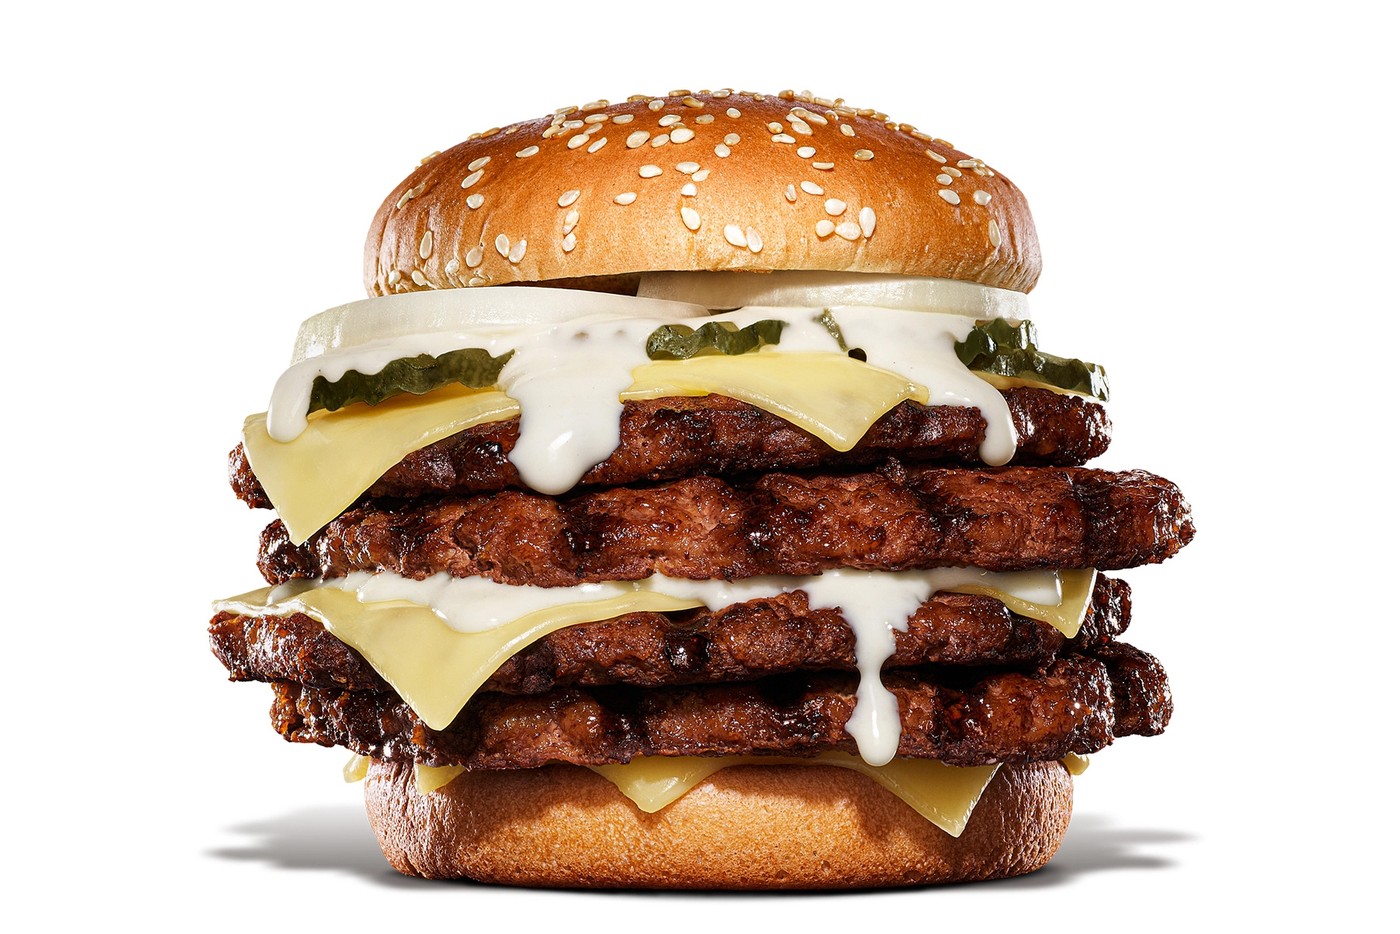 日本 Burger King 全新重达一磅「King Yeti Cheese Burger」正式限时推出